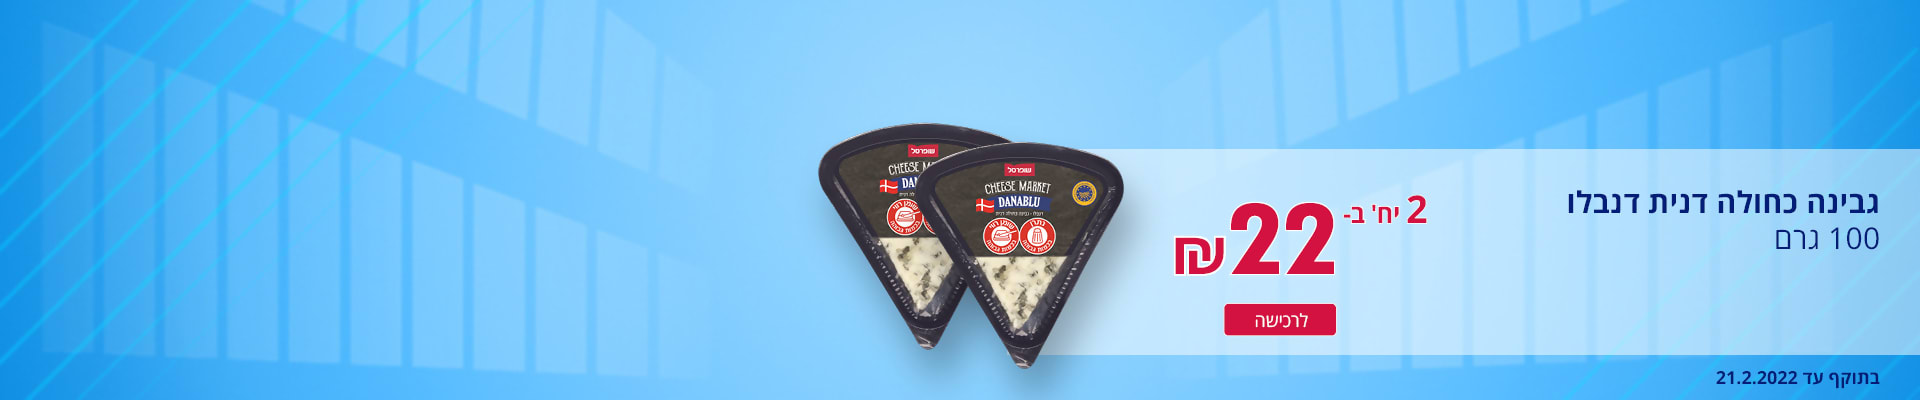 גבינה כחולה דנית דנבלו 100 גרם 2 יח' ב- 22 ₪. בתוקף עד 21.2.2022